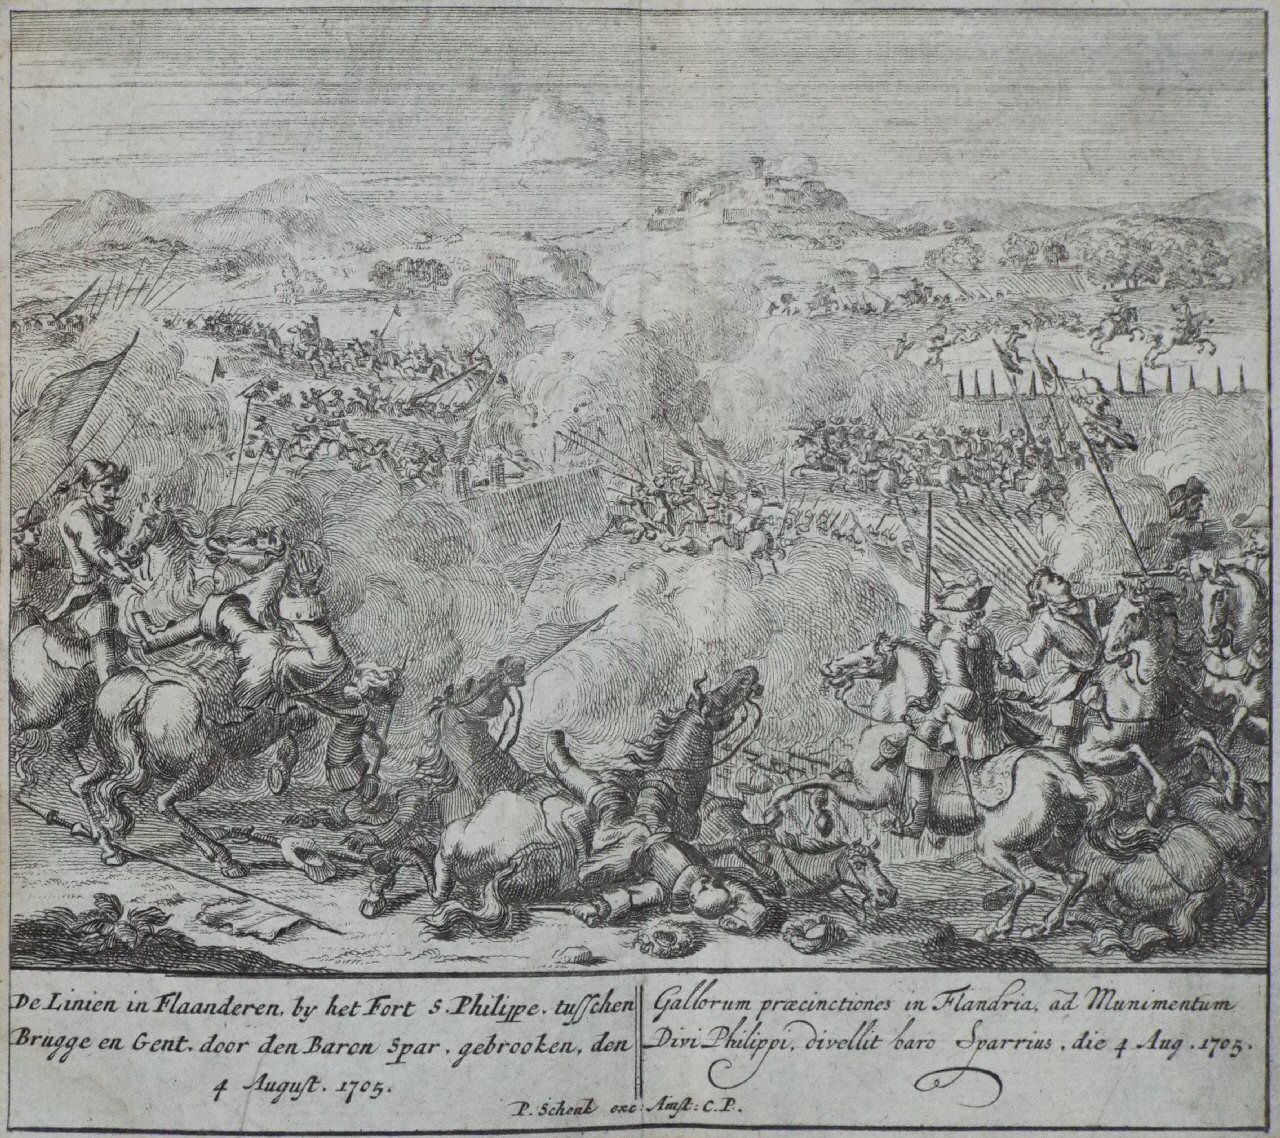 Etching - De Linien in Flaanderen, by het Fort... 4th August 1705.